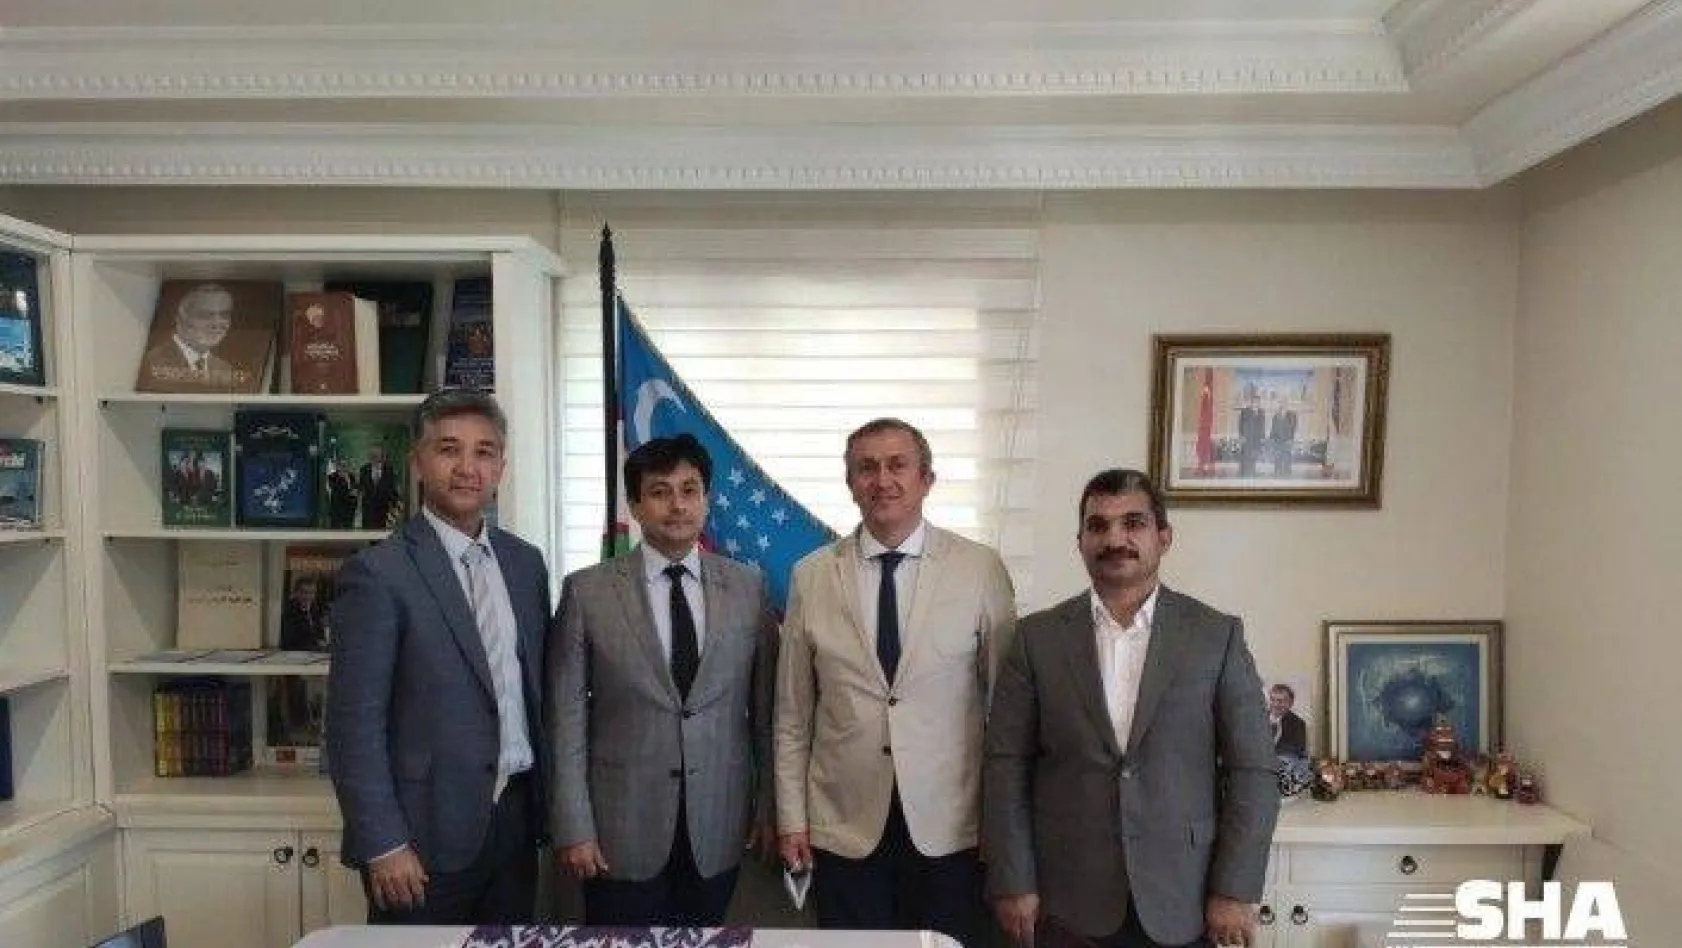 Üniversiteden Özbekistan konsolosluğuna ziyaret